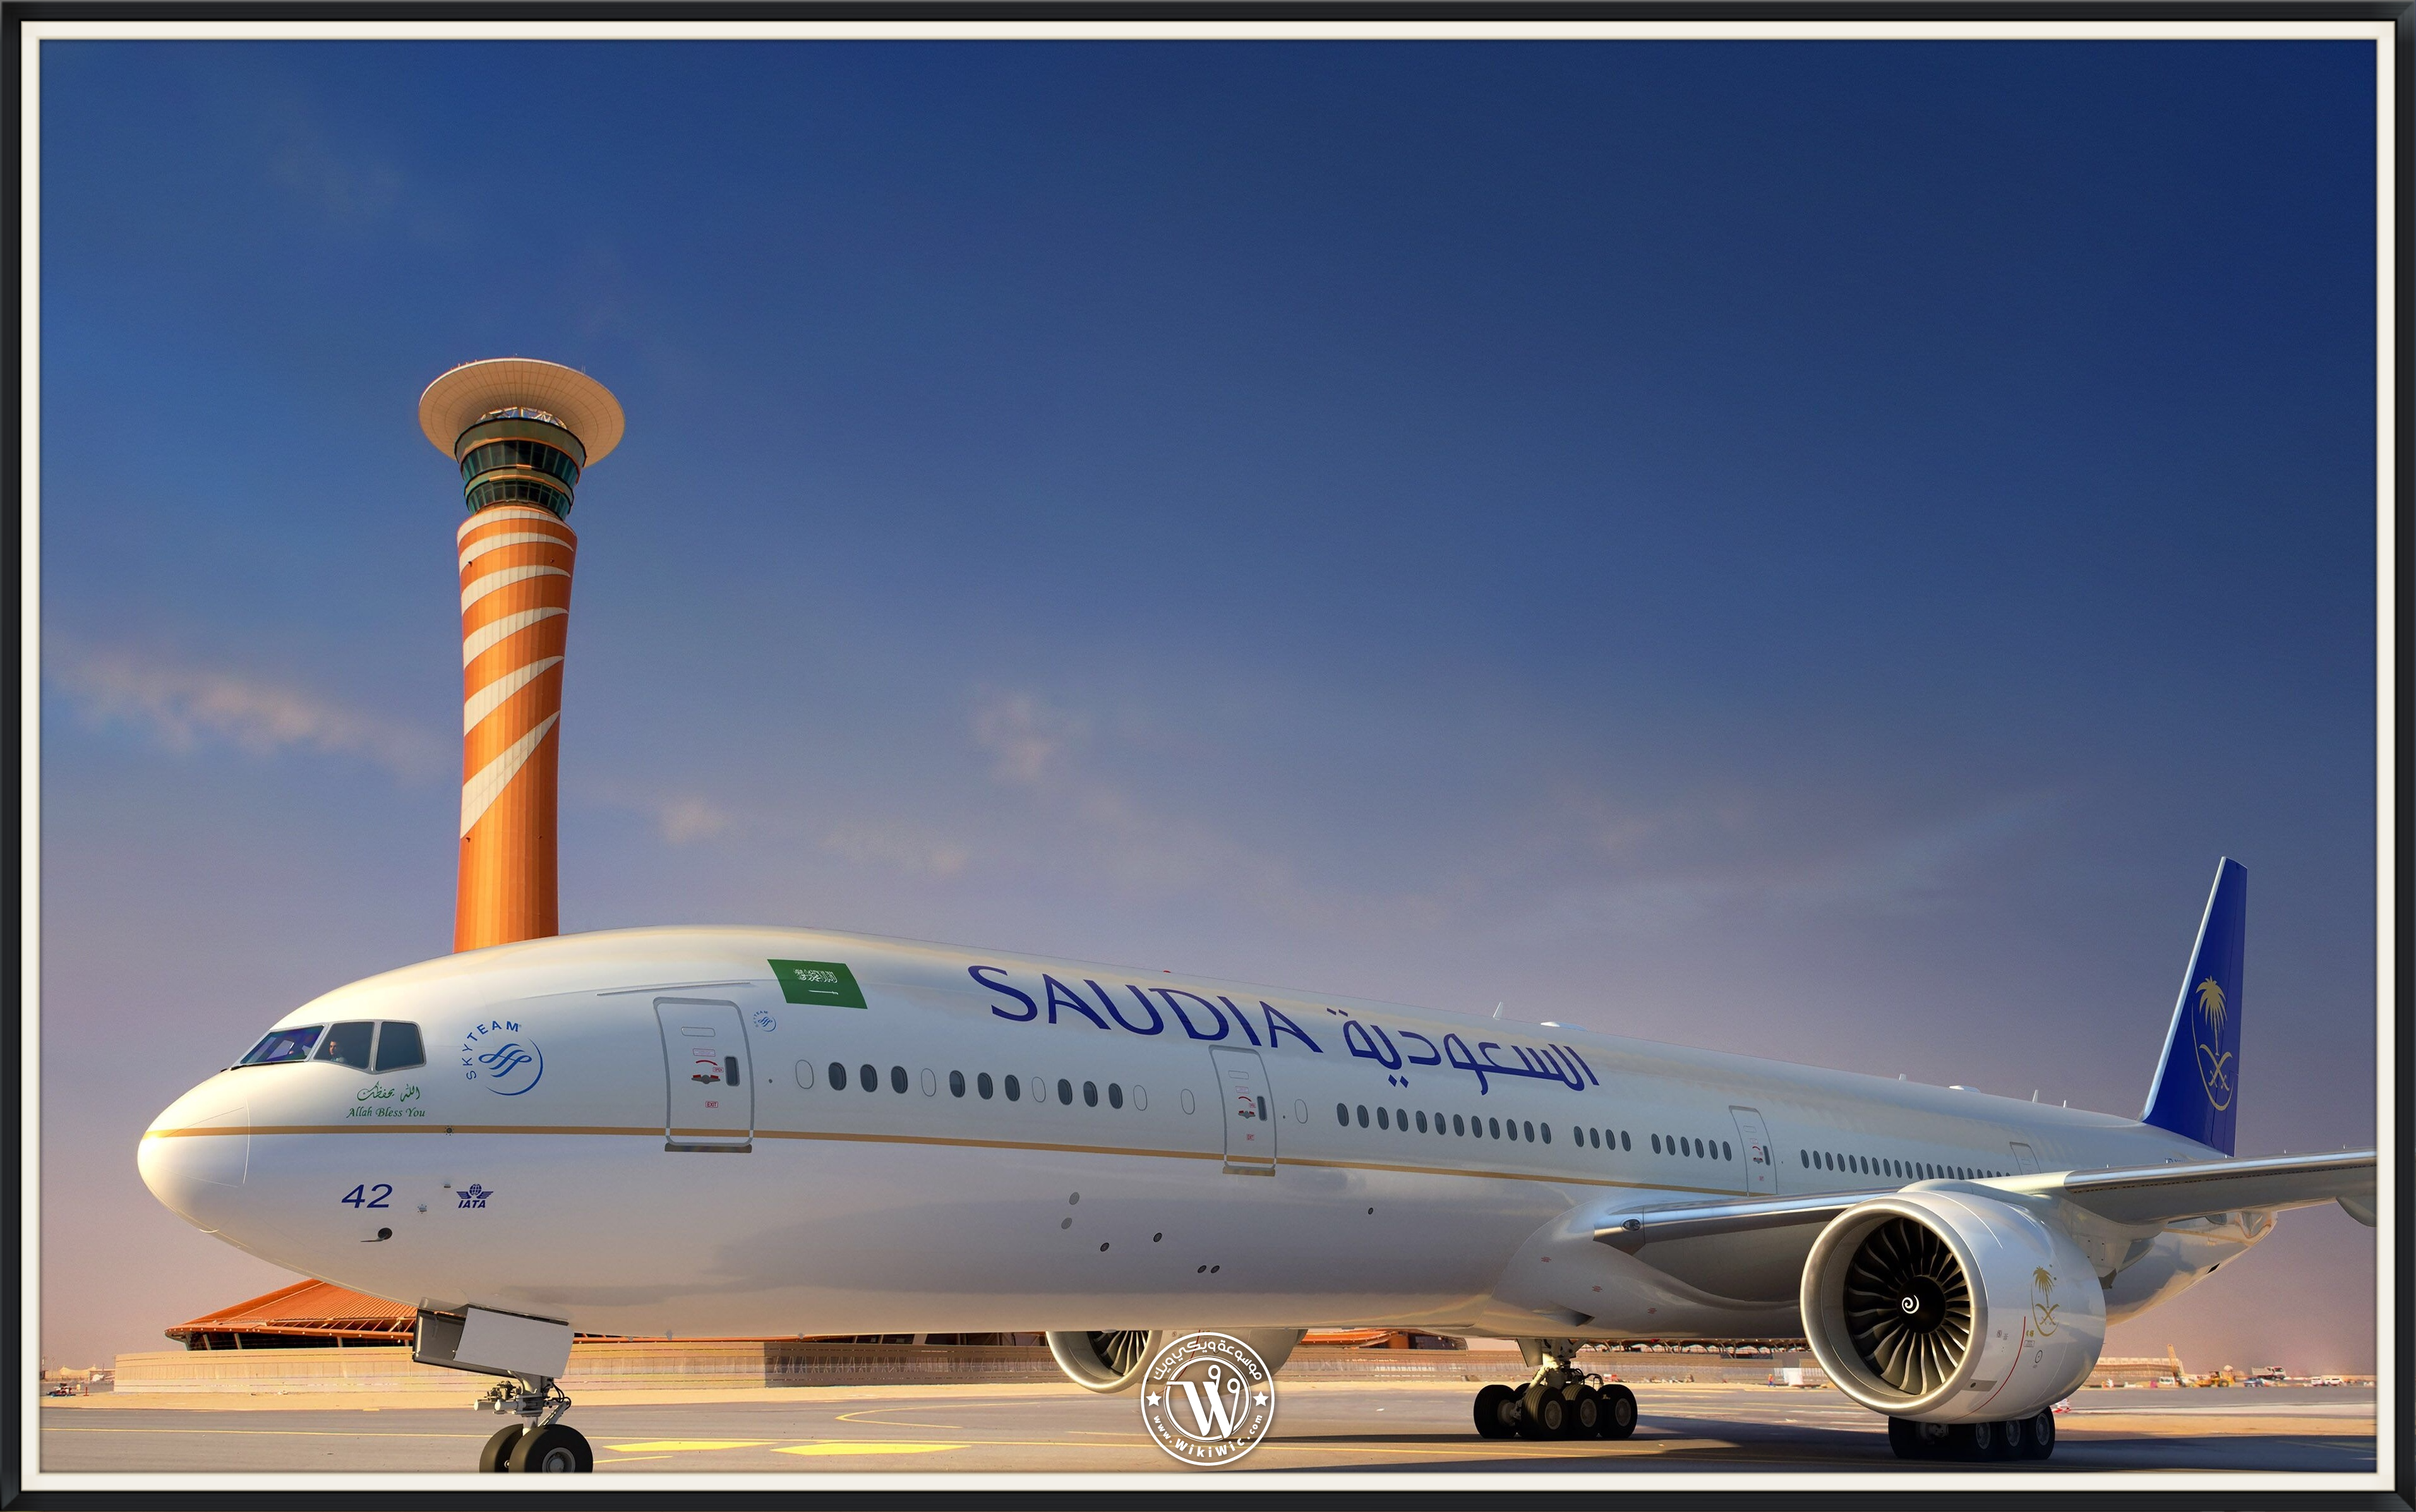 أسماء شركات الطيران السعودية شركات الطيران الخاص والعام السعودية Wiki Wic ويكي ويك